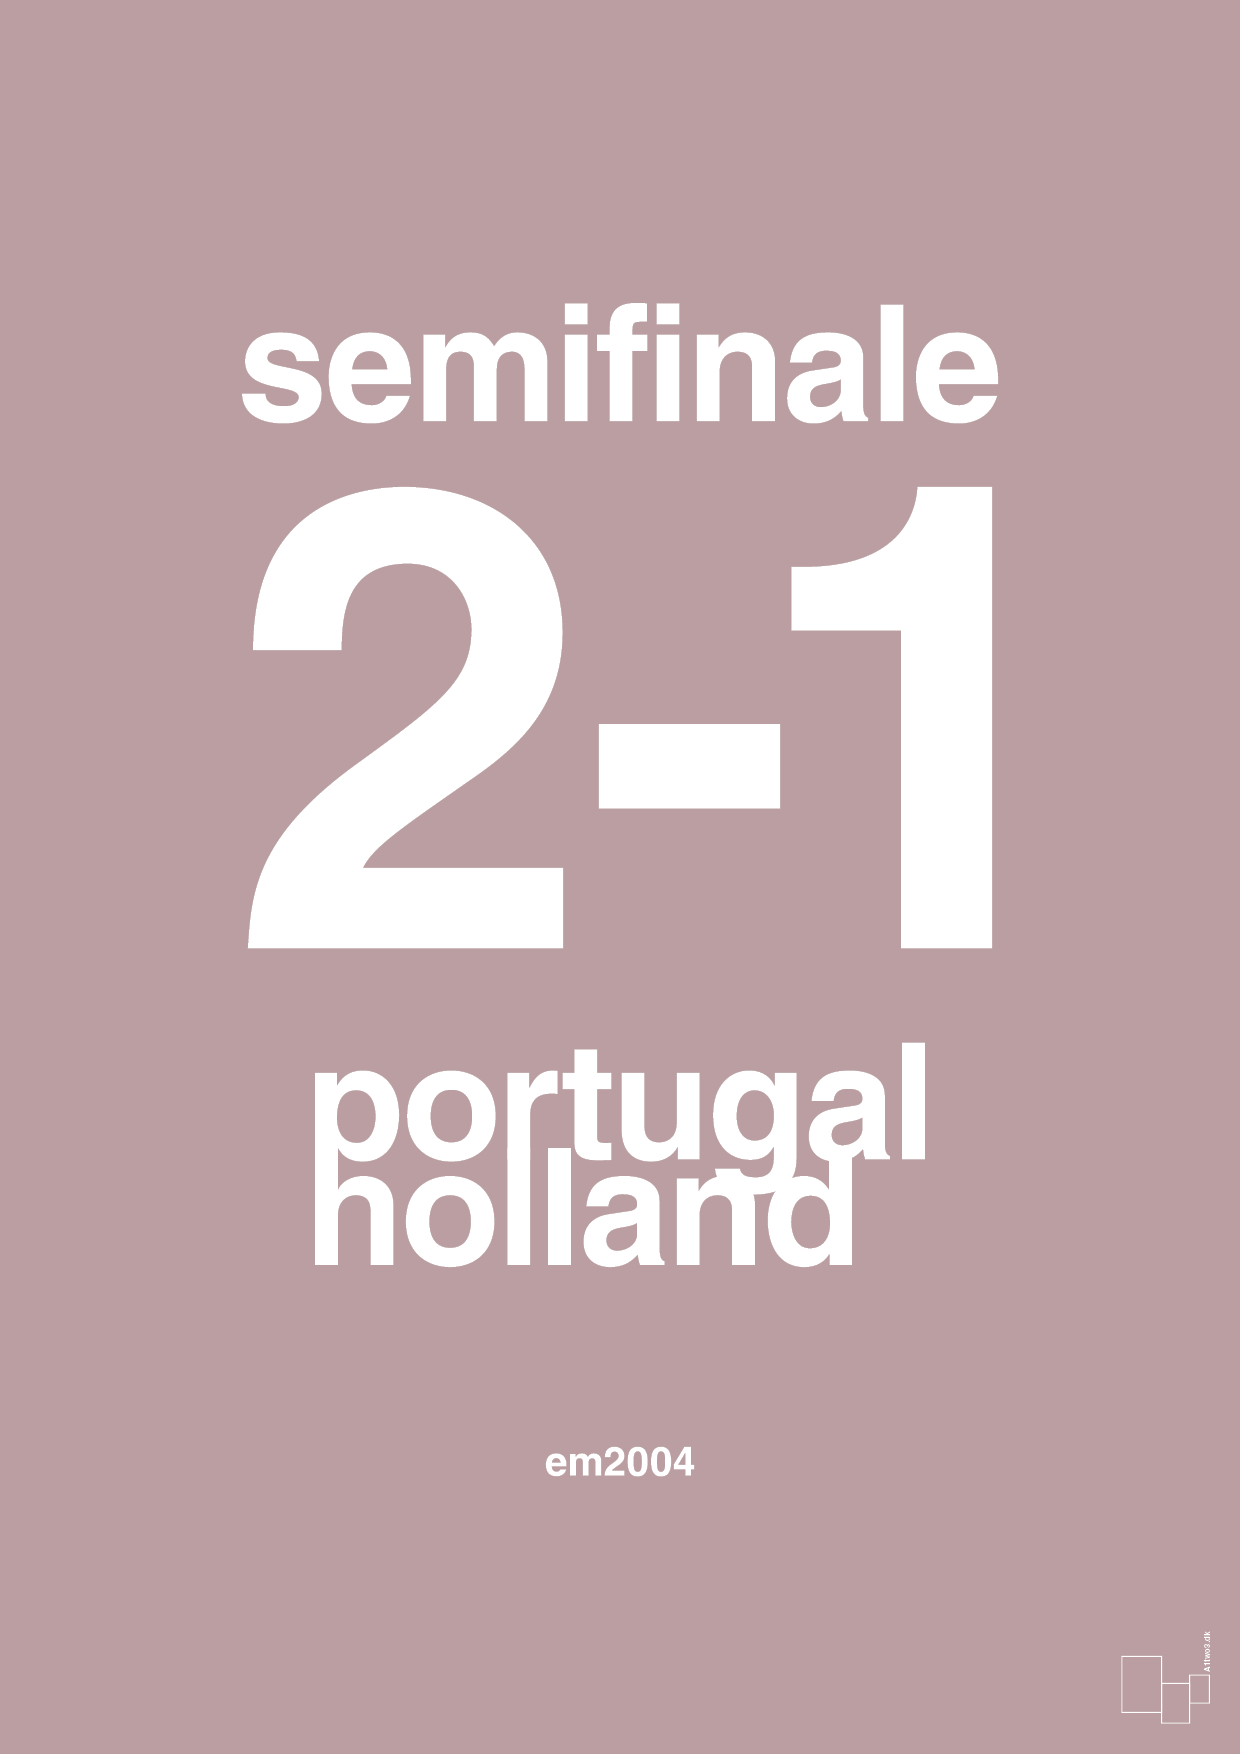 resultat for fodbold em semifinale B i 2004 - Plakat med Sport & Fritid i Light Rose